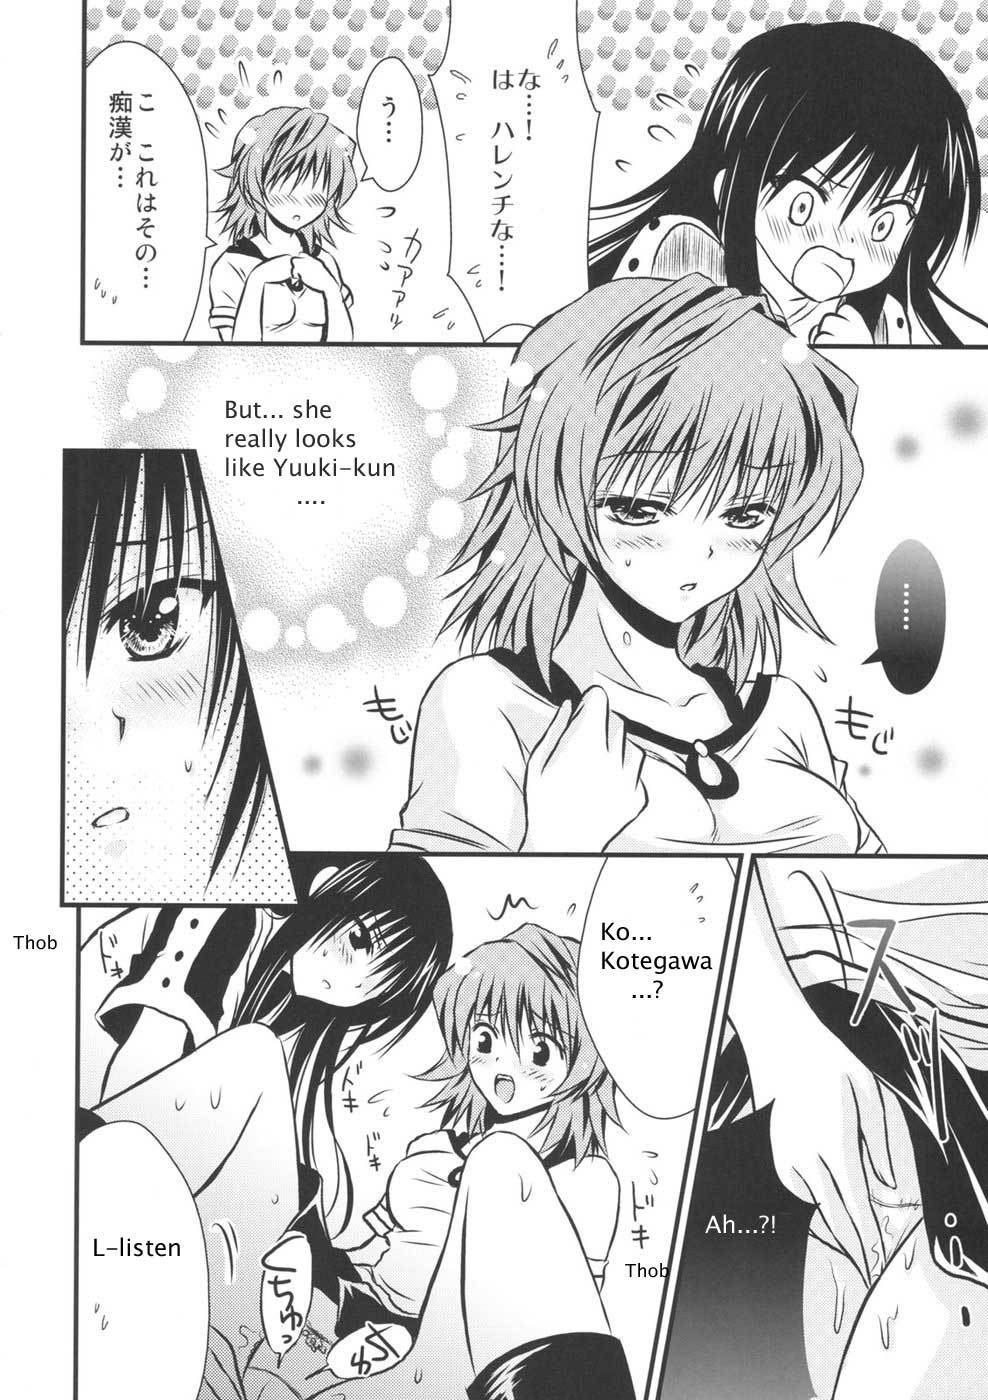 Lovery Summer Girls! to love-ru 13 hentai manga